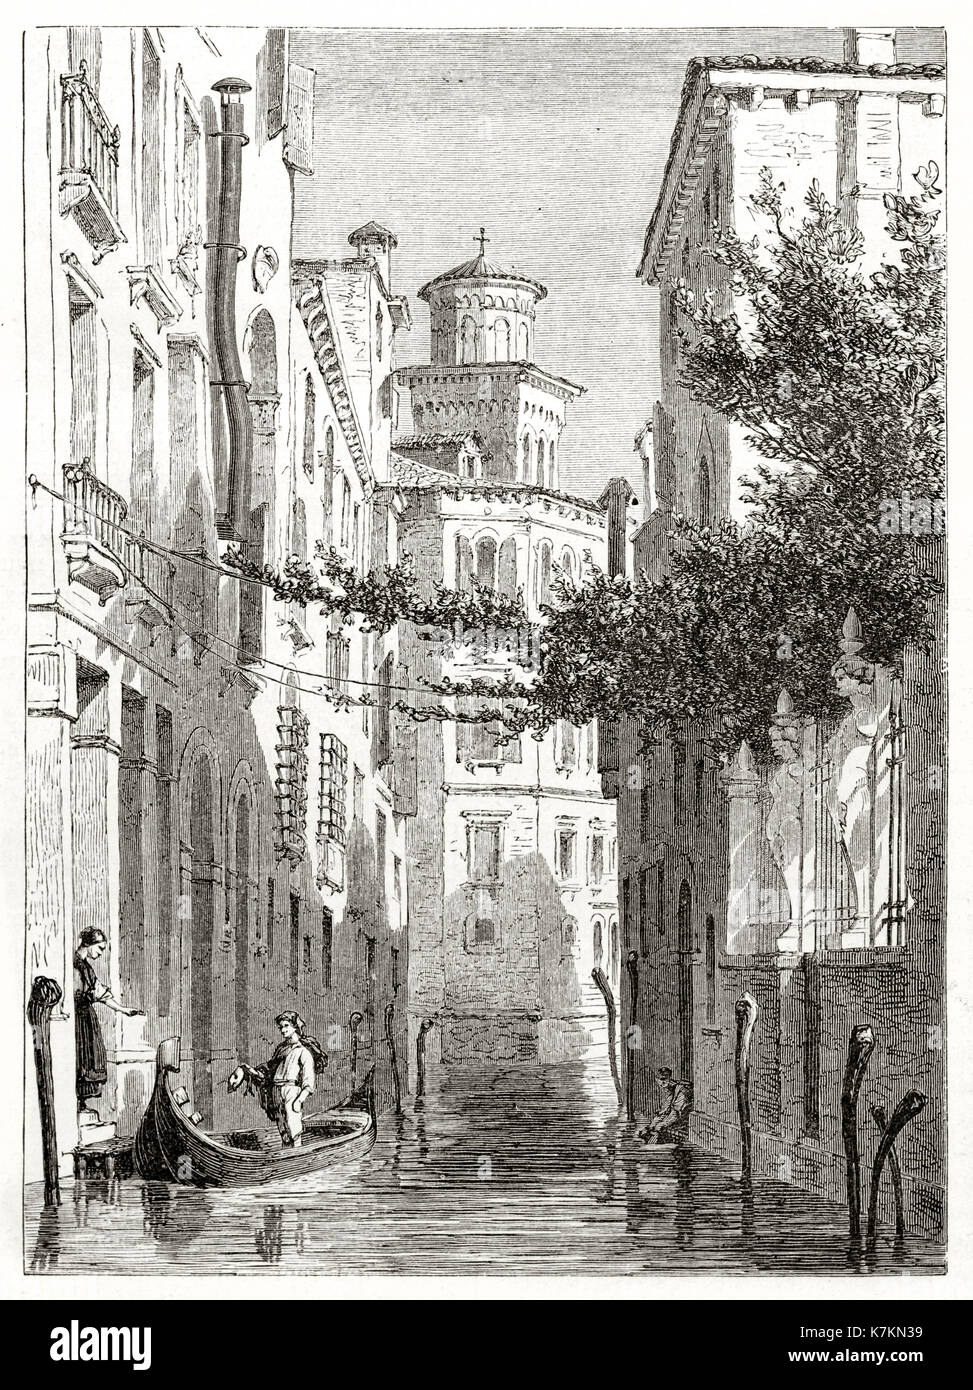 Vue ancienne de Trevisan Cappello palais, Venise, Italie. Par Girardet après de Beaumont, publ. sur le Tour du Monde, Paris, 1862 Banque D'Images